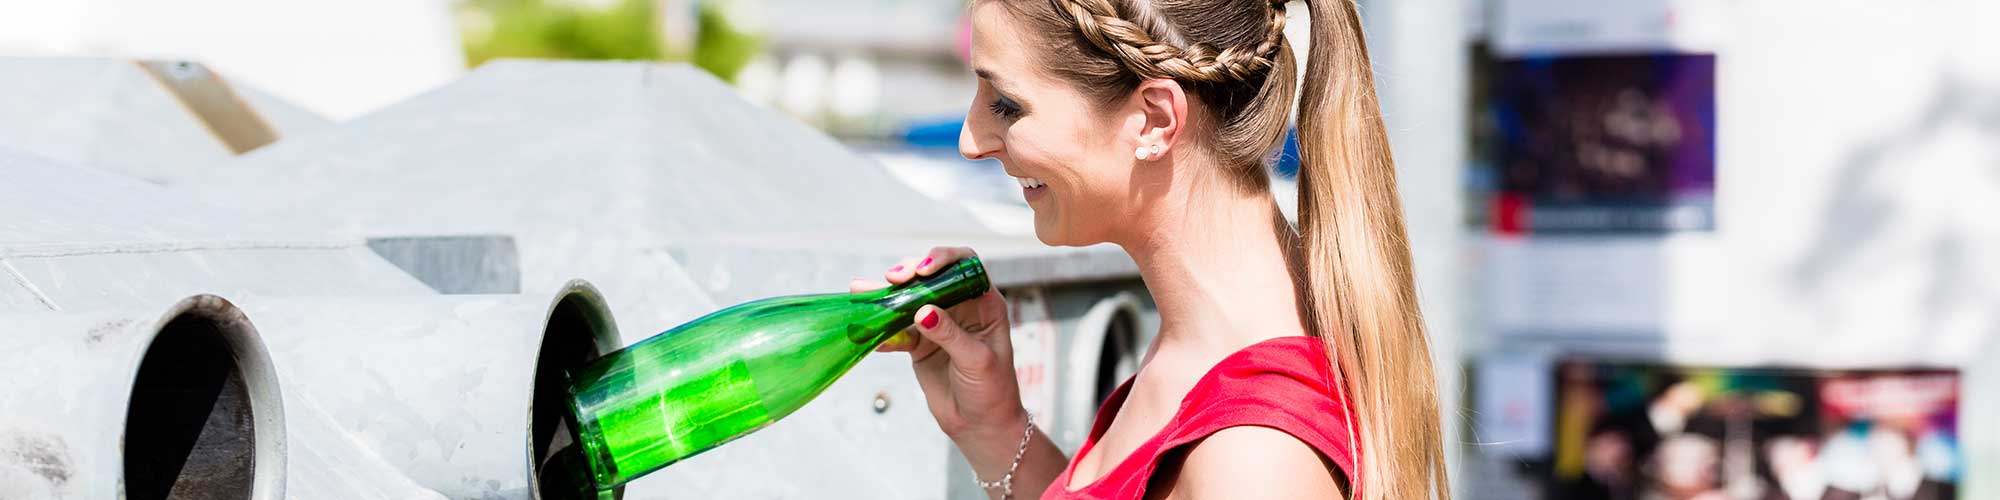 Frau auf Recyclinghof wirft Flaschen in einen Container